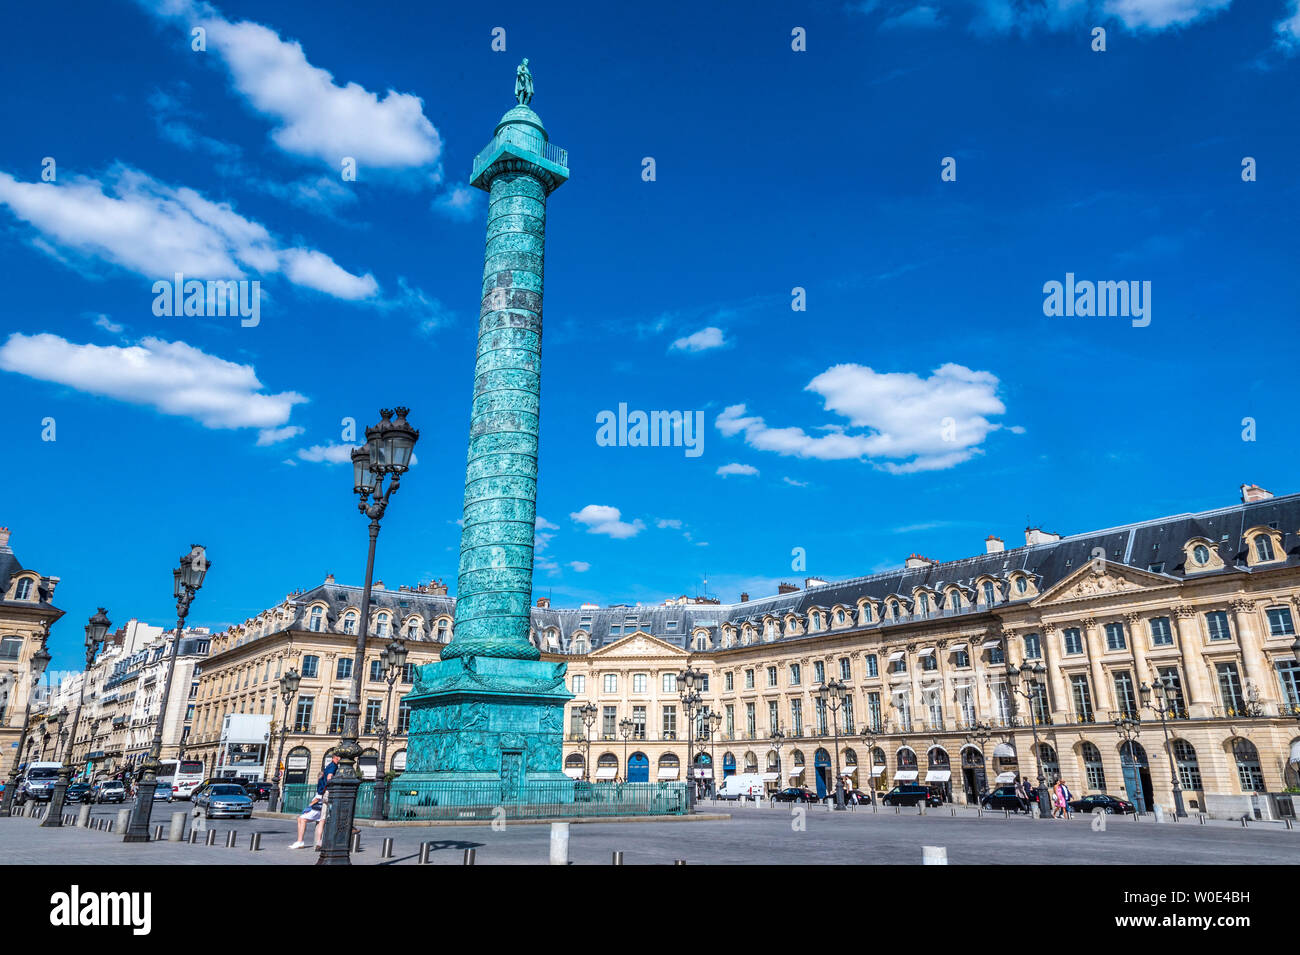 France, 1st arrondissement of Paris, place Vendome and colonne d'Austerlitz Stock Photo